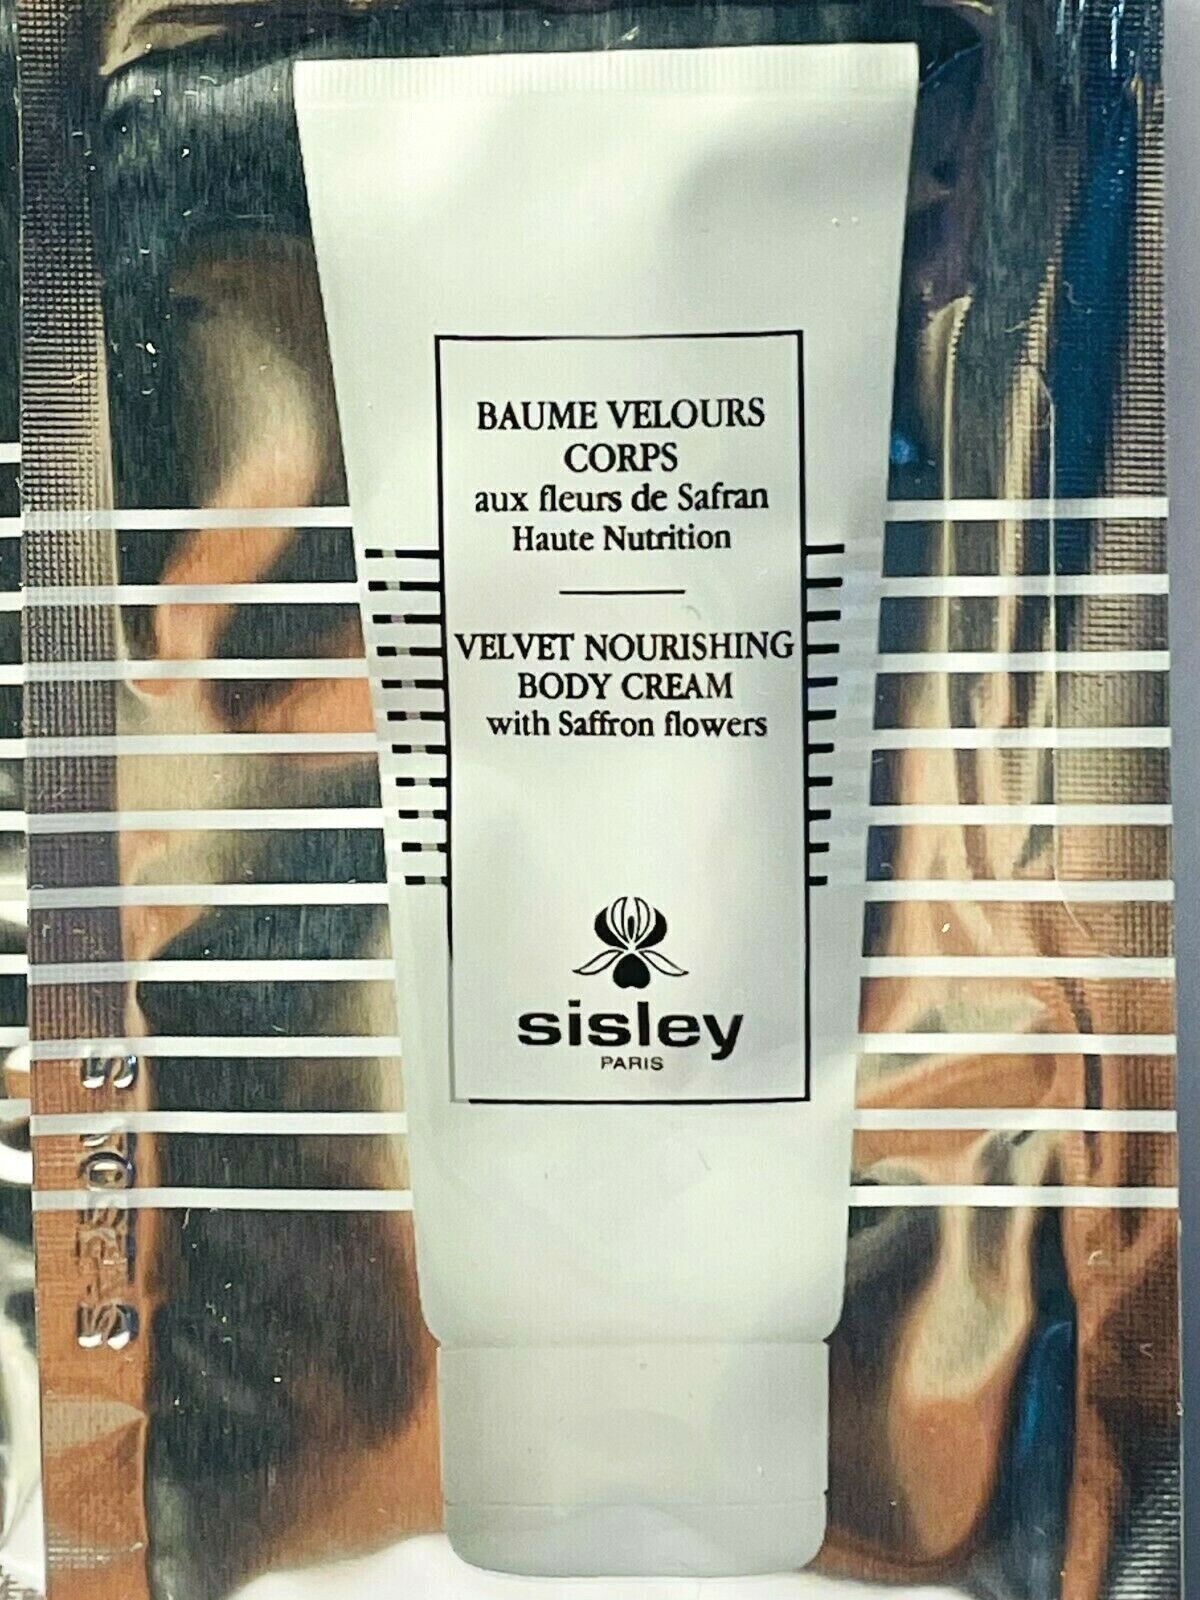 Sisley Velvet Nourishing Body Cream With Saffron Flowers 8ml 0.27 fl. oz. official skincare samples